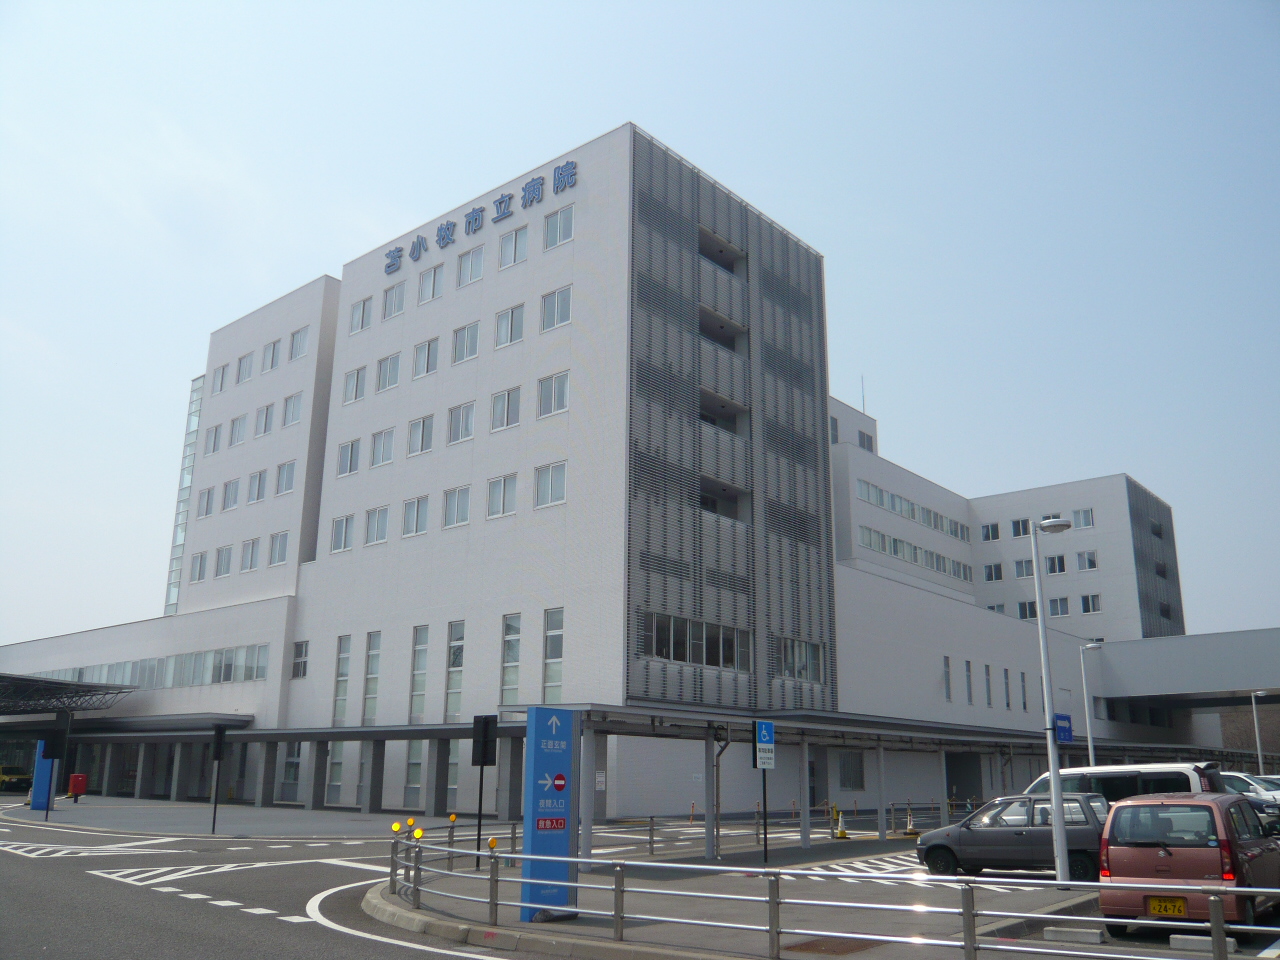 Hospital. 488m to Tomakomai City Hospital (Hospital)